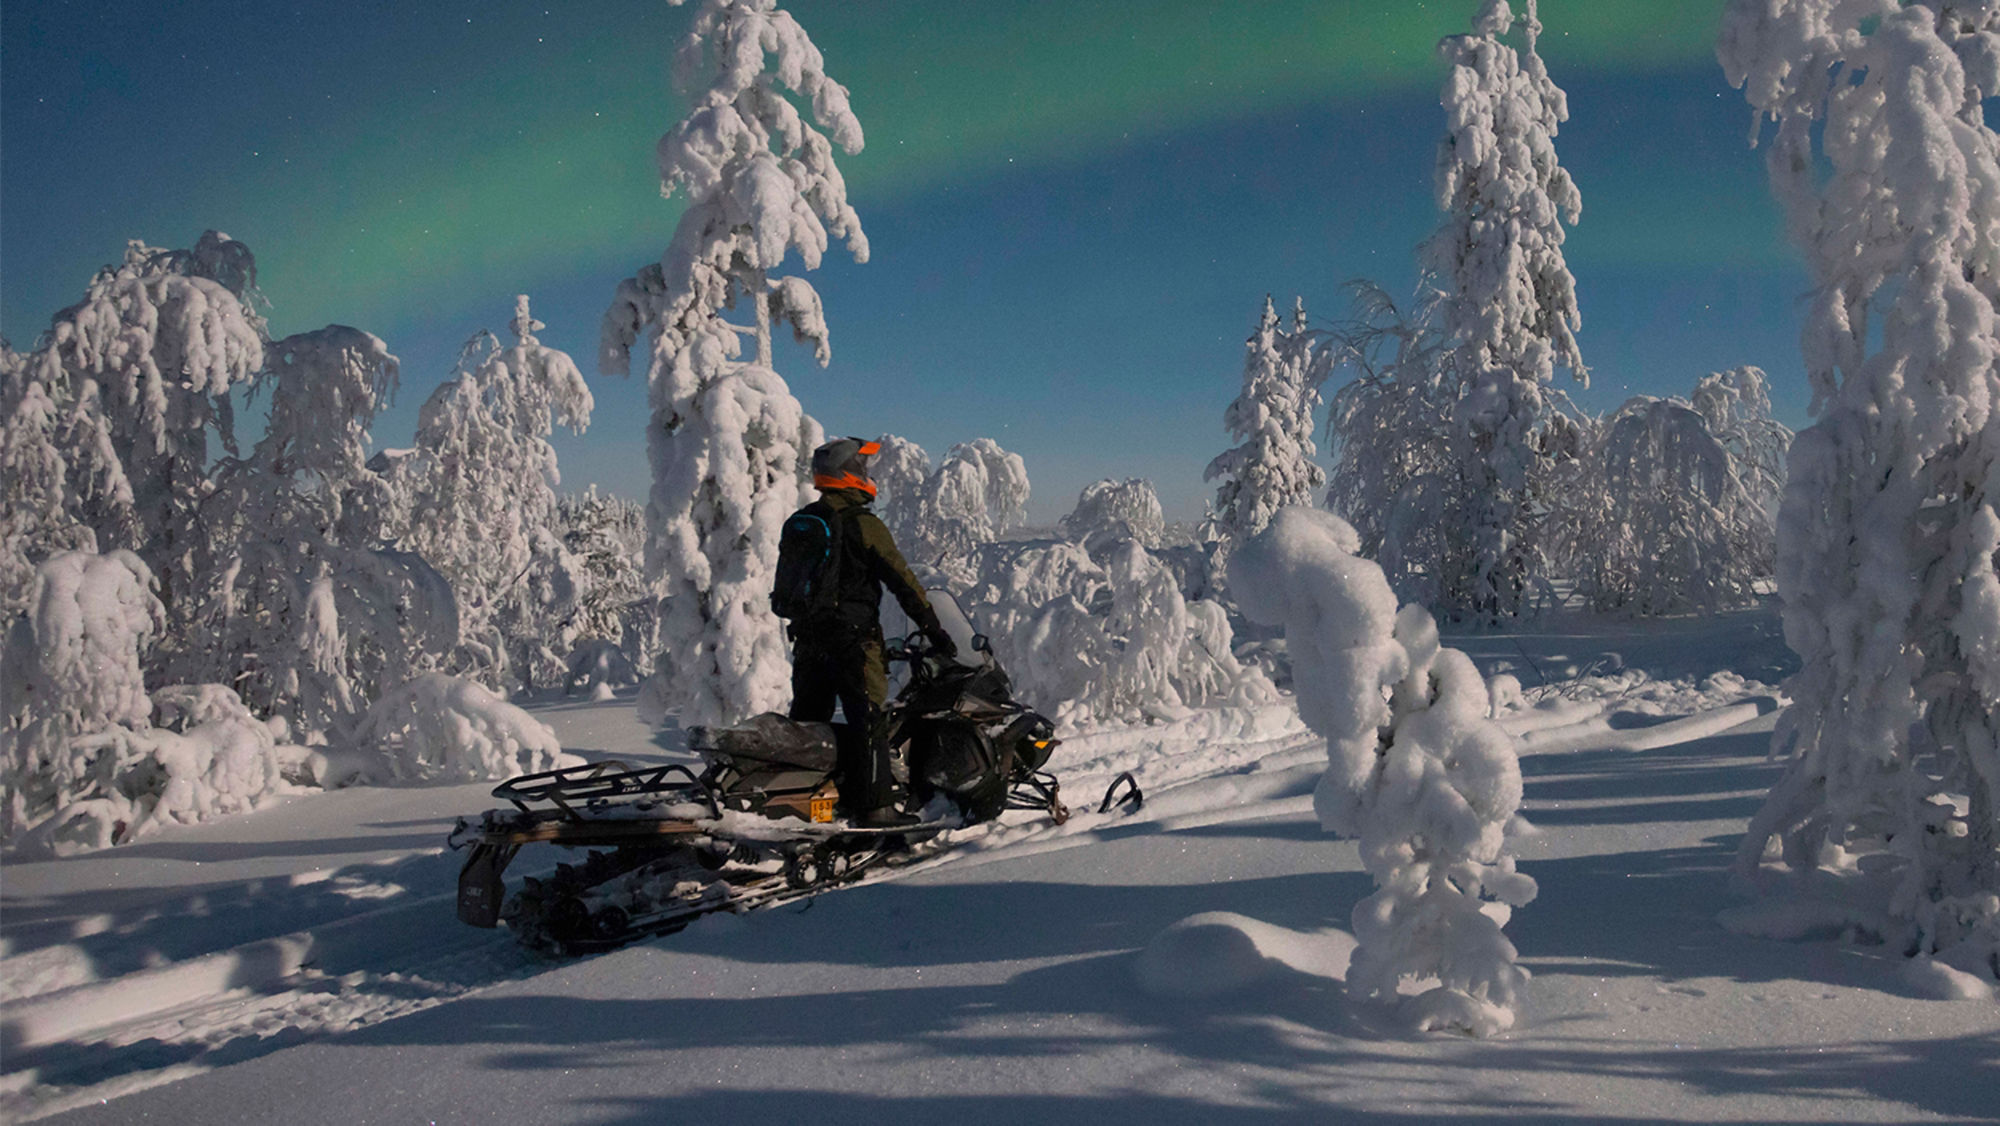 Föraren beundrar norrskenet i en mörk skog på en Lynx 49 Ranger ST snöskoter